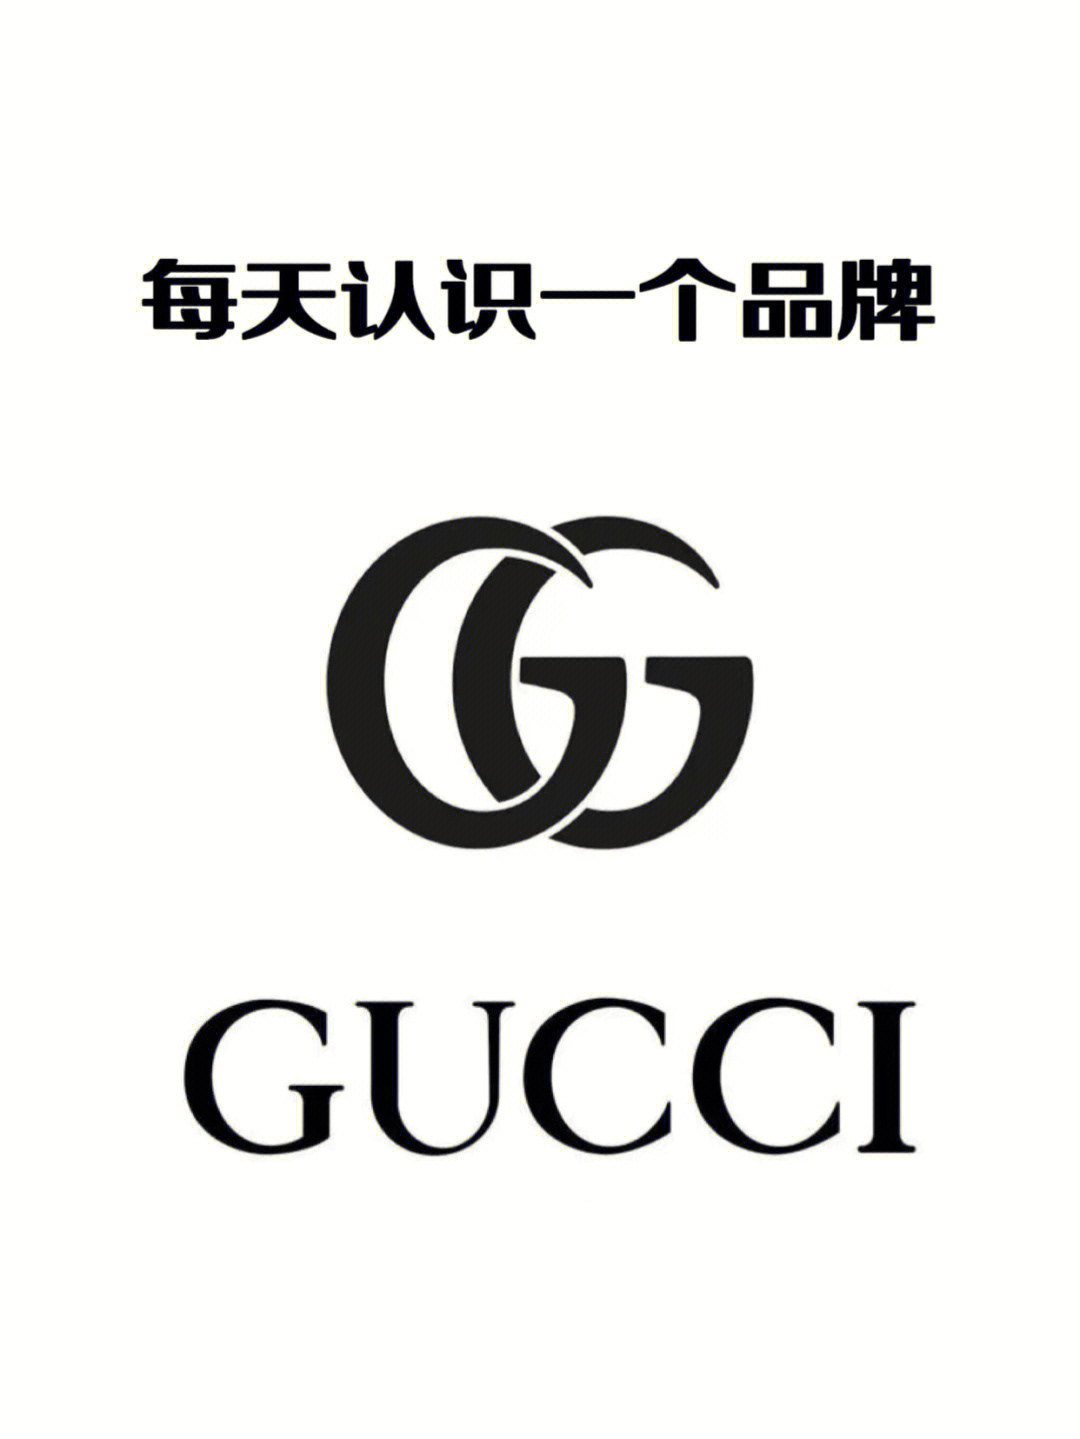 gucci标志设计说明图片